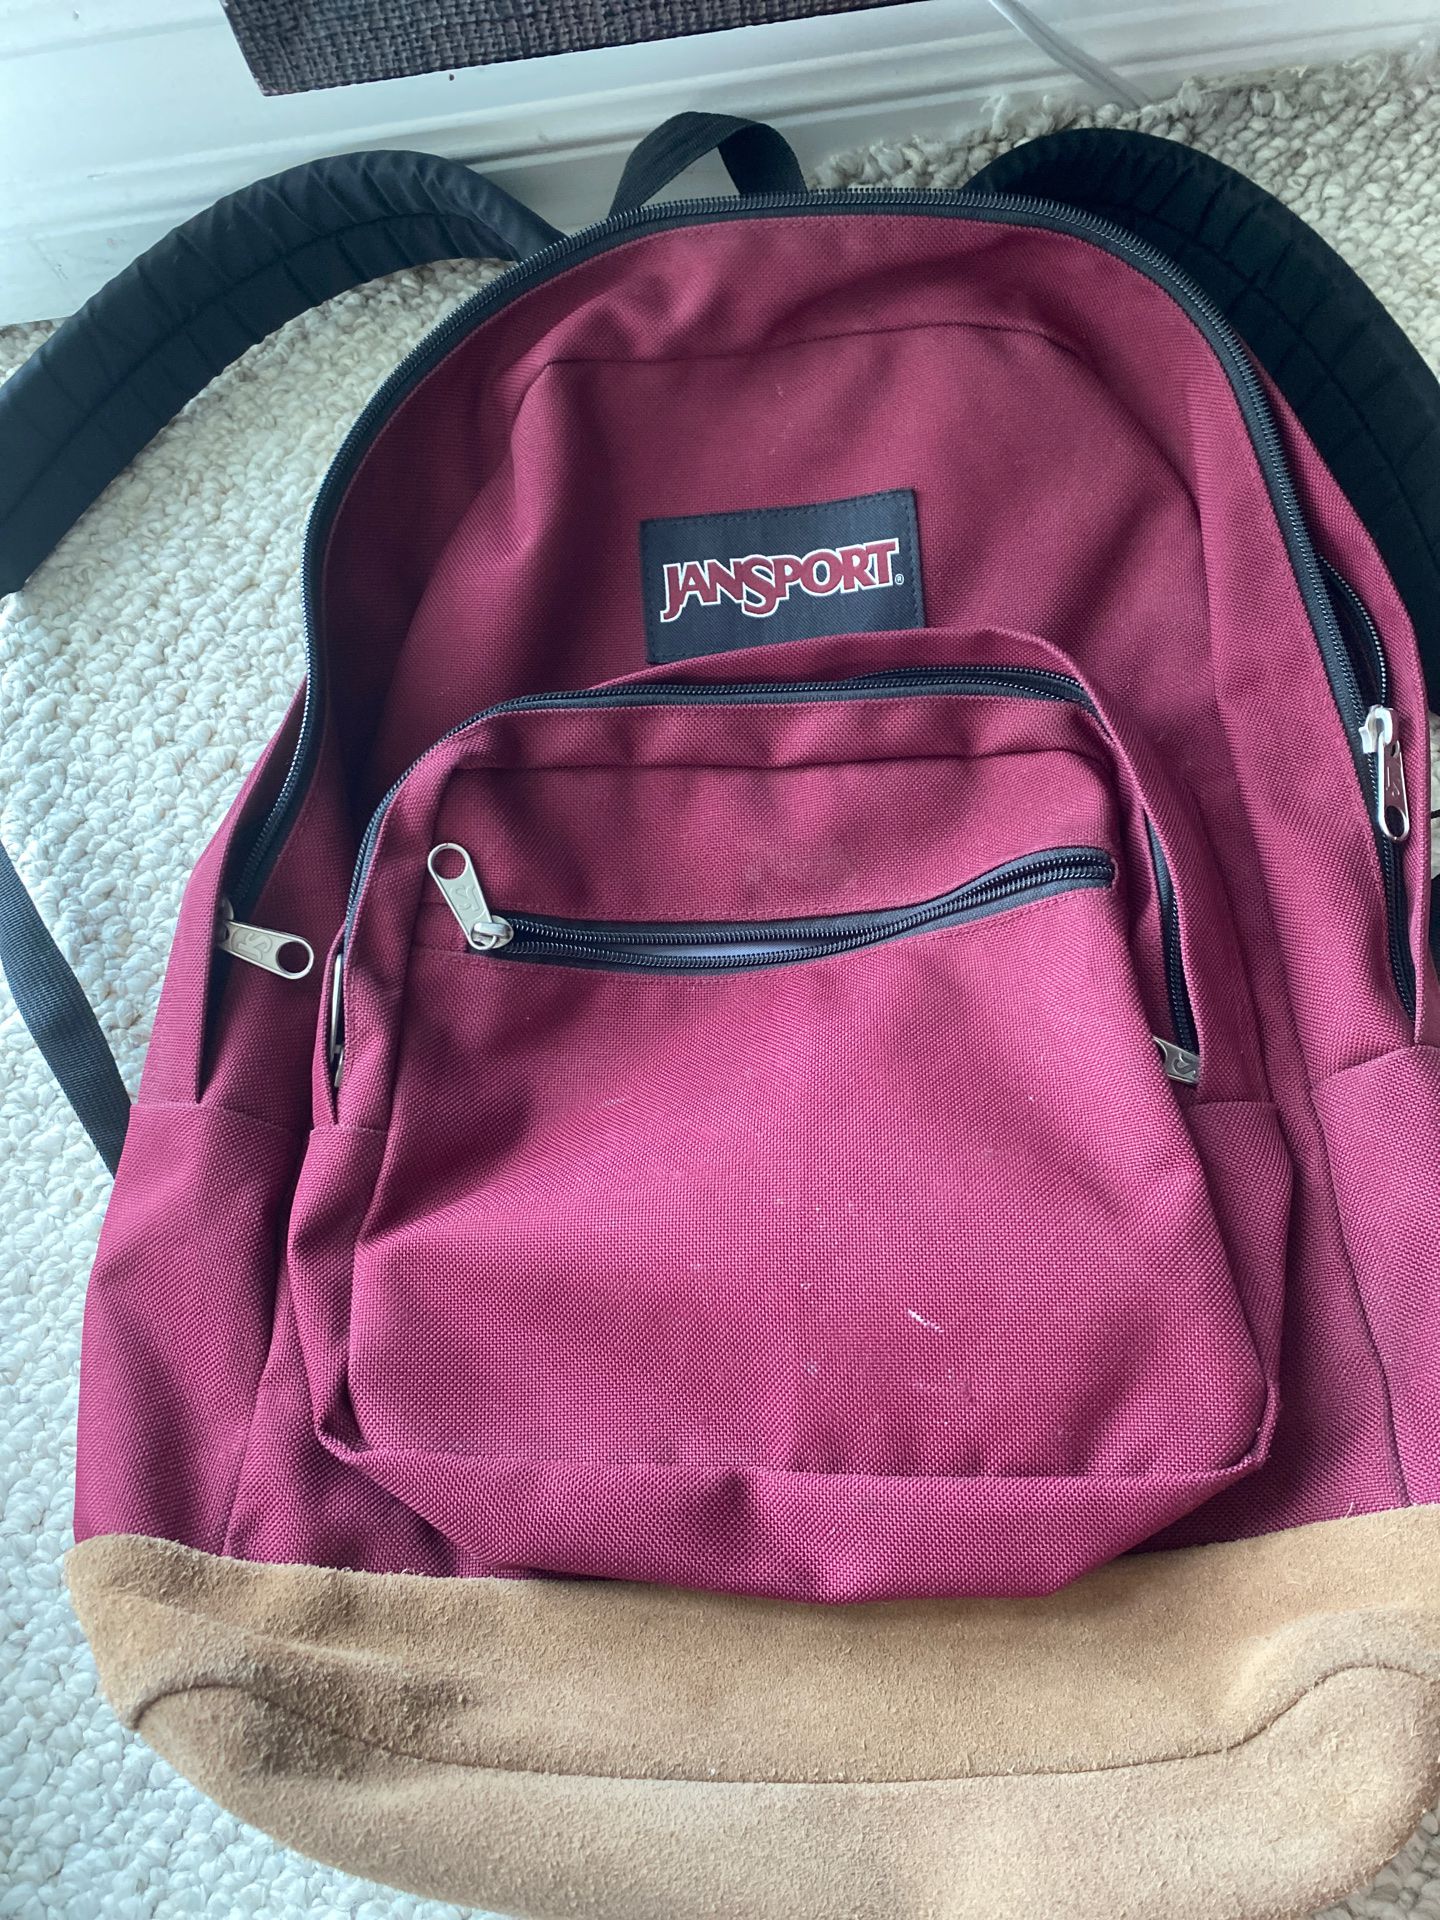 Red Jansport backpack